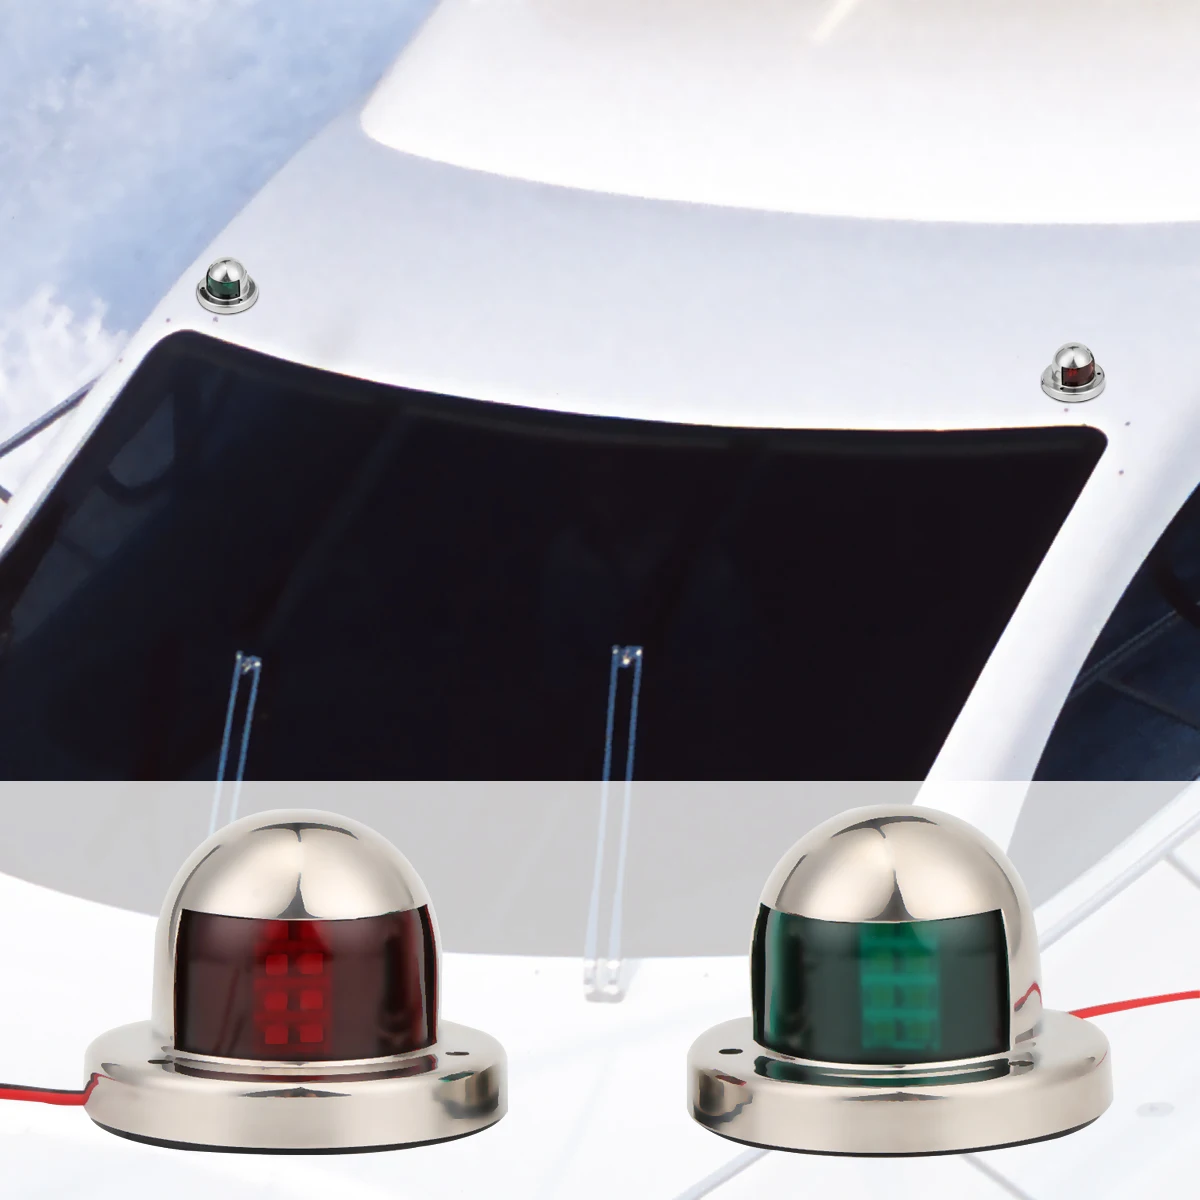 2 шт., 1 пара, 12 В светодиодный навигационный светильник из нержавеющей стали с бантом, красный, зеленый, сигнальный светильник для плавания, для морской лодки, яхты